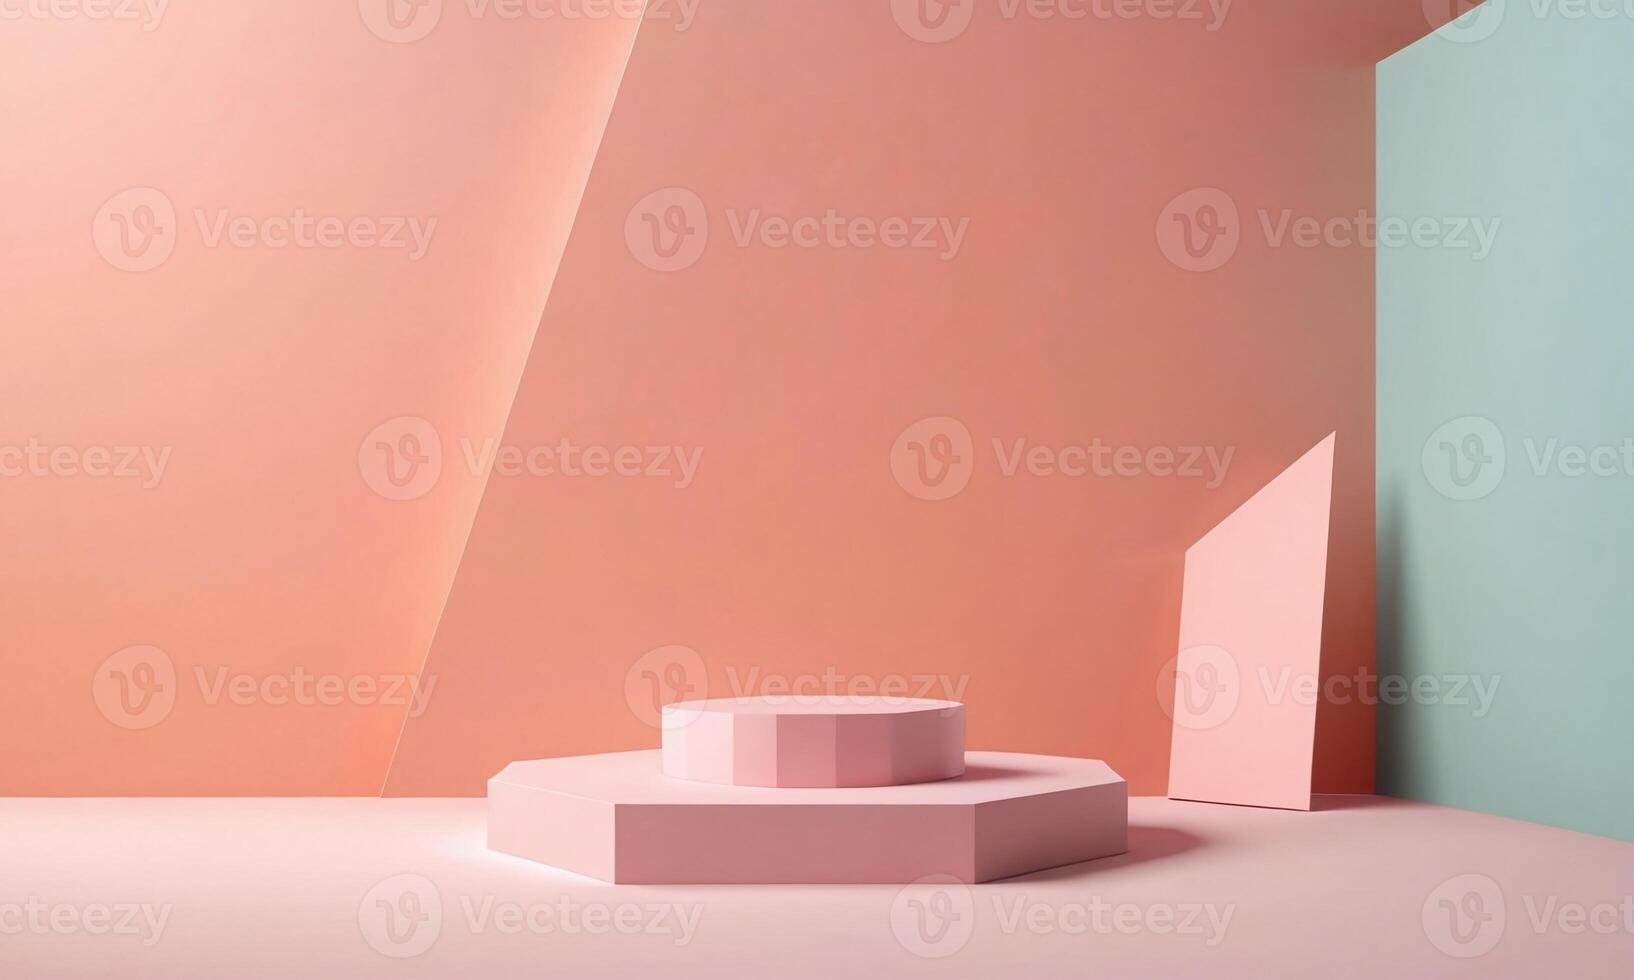 3 Abmessungen geometrisch Formen. leer Podium Anzeige im Pastell- Farbe. minimalistisch Sockel oder Vitrine Szene zum Geschenk Produkt und spotten hoch. abstrakt Hintergrund zum kosmetisch Werbung foto